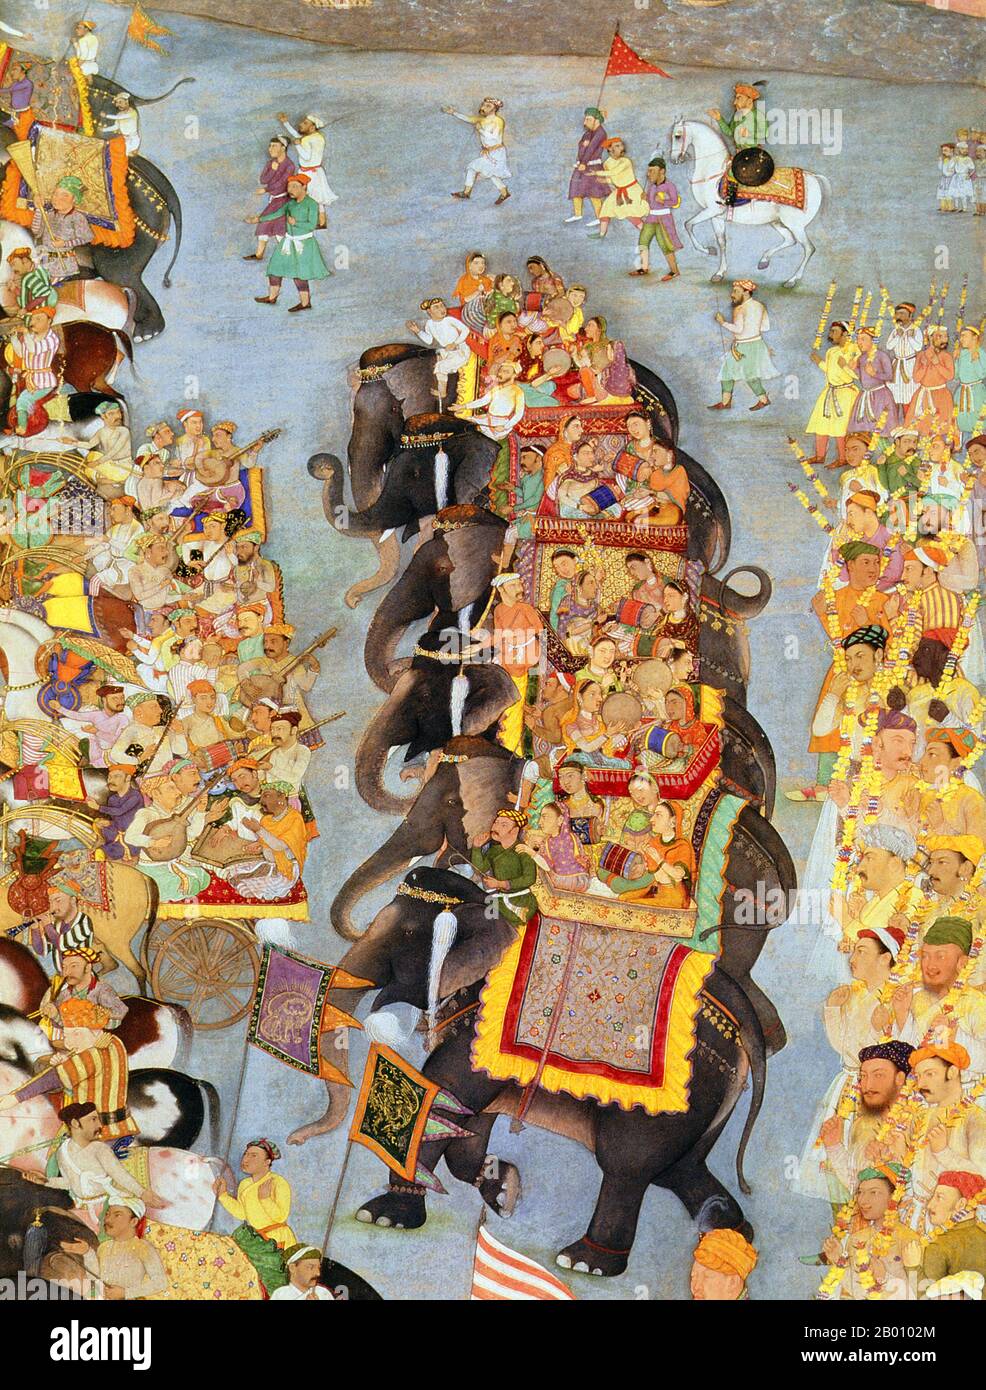 India: Una cerimonia stravagante che coinvolge musicisti, elefanti, ospiti a cavallo e servi che portano vassoi di doni alla casa della sposa del principe Dara Shikoh, l'erede apparente al trono di Mughal. Pittura di Bishandas (fl. 17 ° secolo), c.. 1656-1657. Il principe Dara Shikoh (1615-59) era il figlio maggiore e l'erede apparente dell'imperatore Mughal Shah Jahan e di sua moglie Mumtaz Mahal. Il suo nome in persiano significa ‘Darius il magnifico’ e fu favorito come successore da suo padre e da sua sorella Jahanara Begum, ma fu sconfitto dal fratello minore Aurangzeb in una lotta amara. Foto Stock